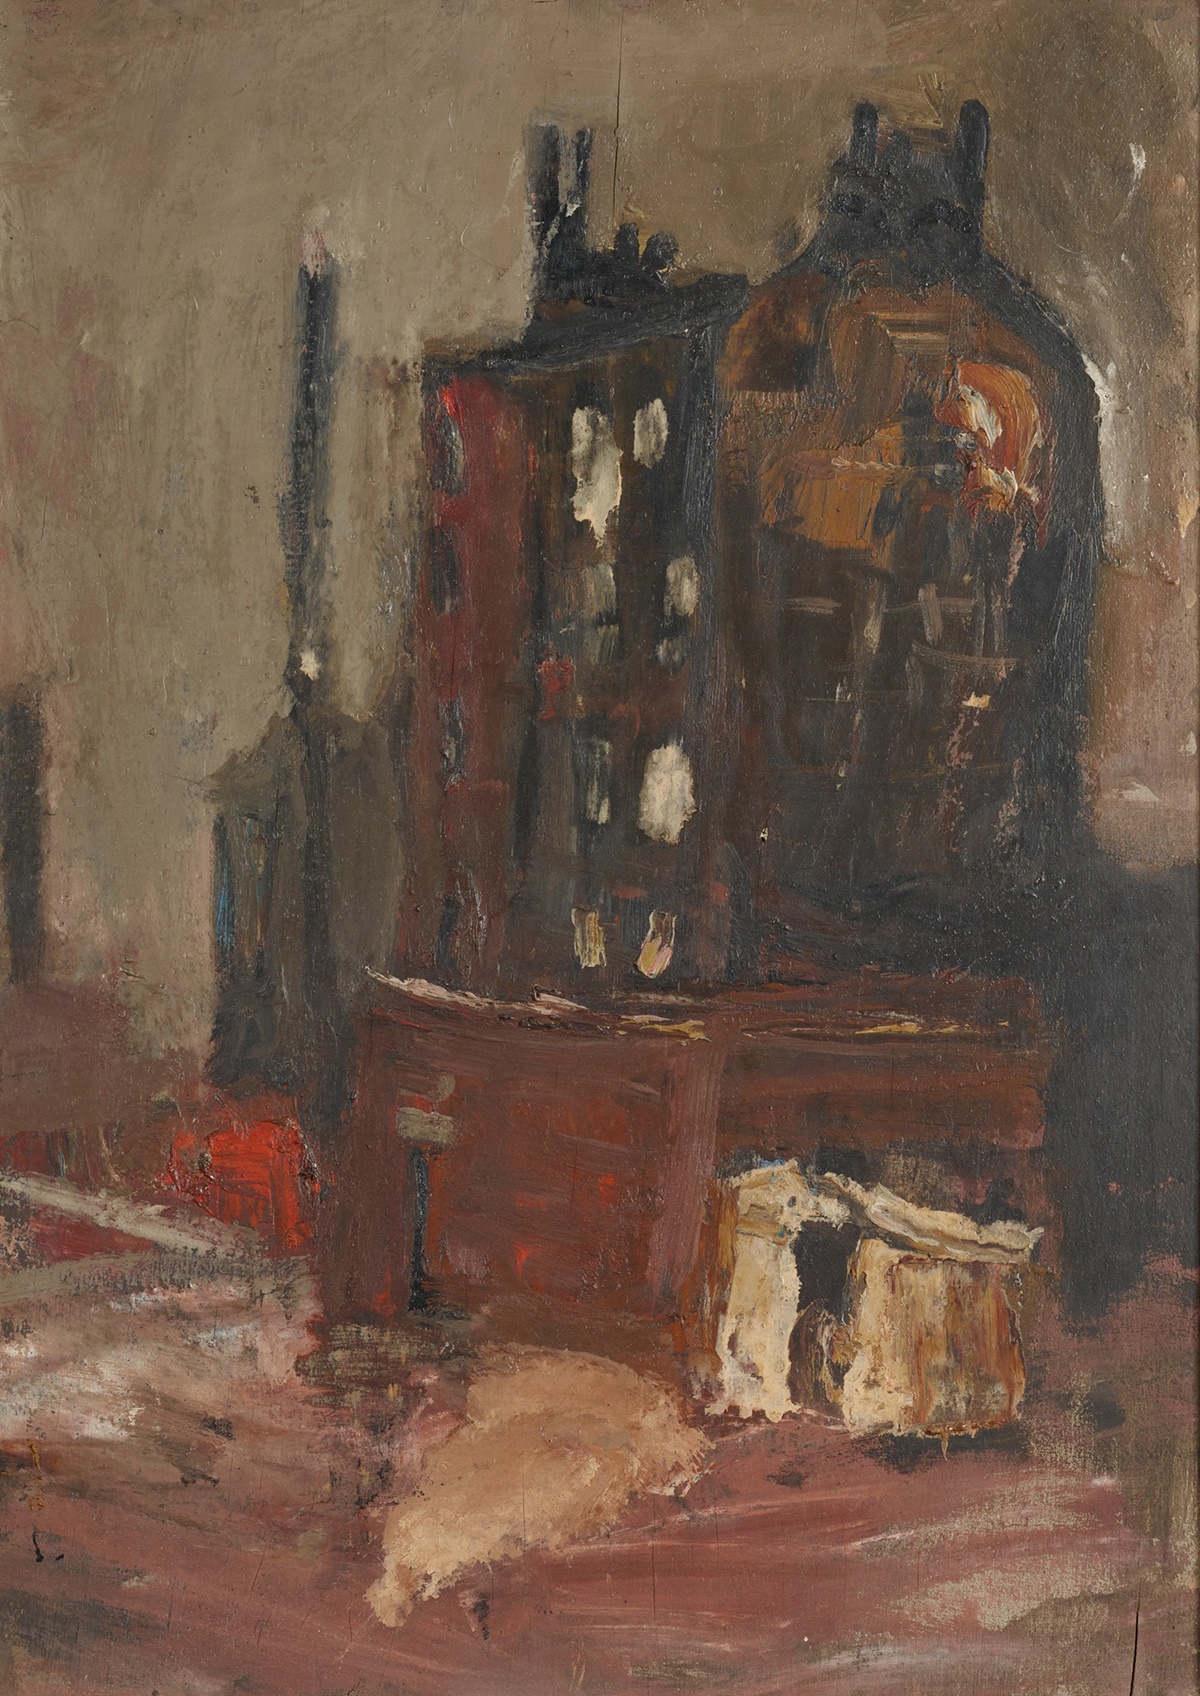 LOT 147 | JOAN EARDLEY R.S.A. (SCOTTISH 1921-1963) | A GLASGOW TENEMENT  Oil on board | 38cm x 28cm (15in x 11in) | £8,000 - £12,000 + fees